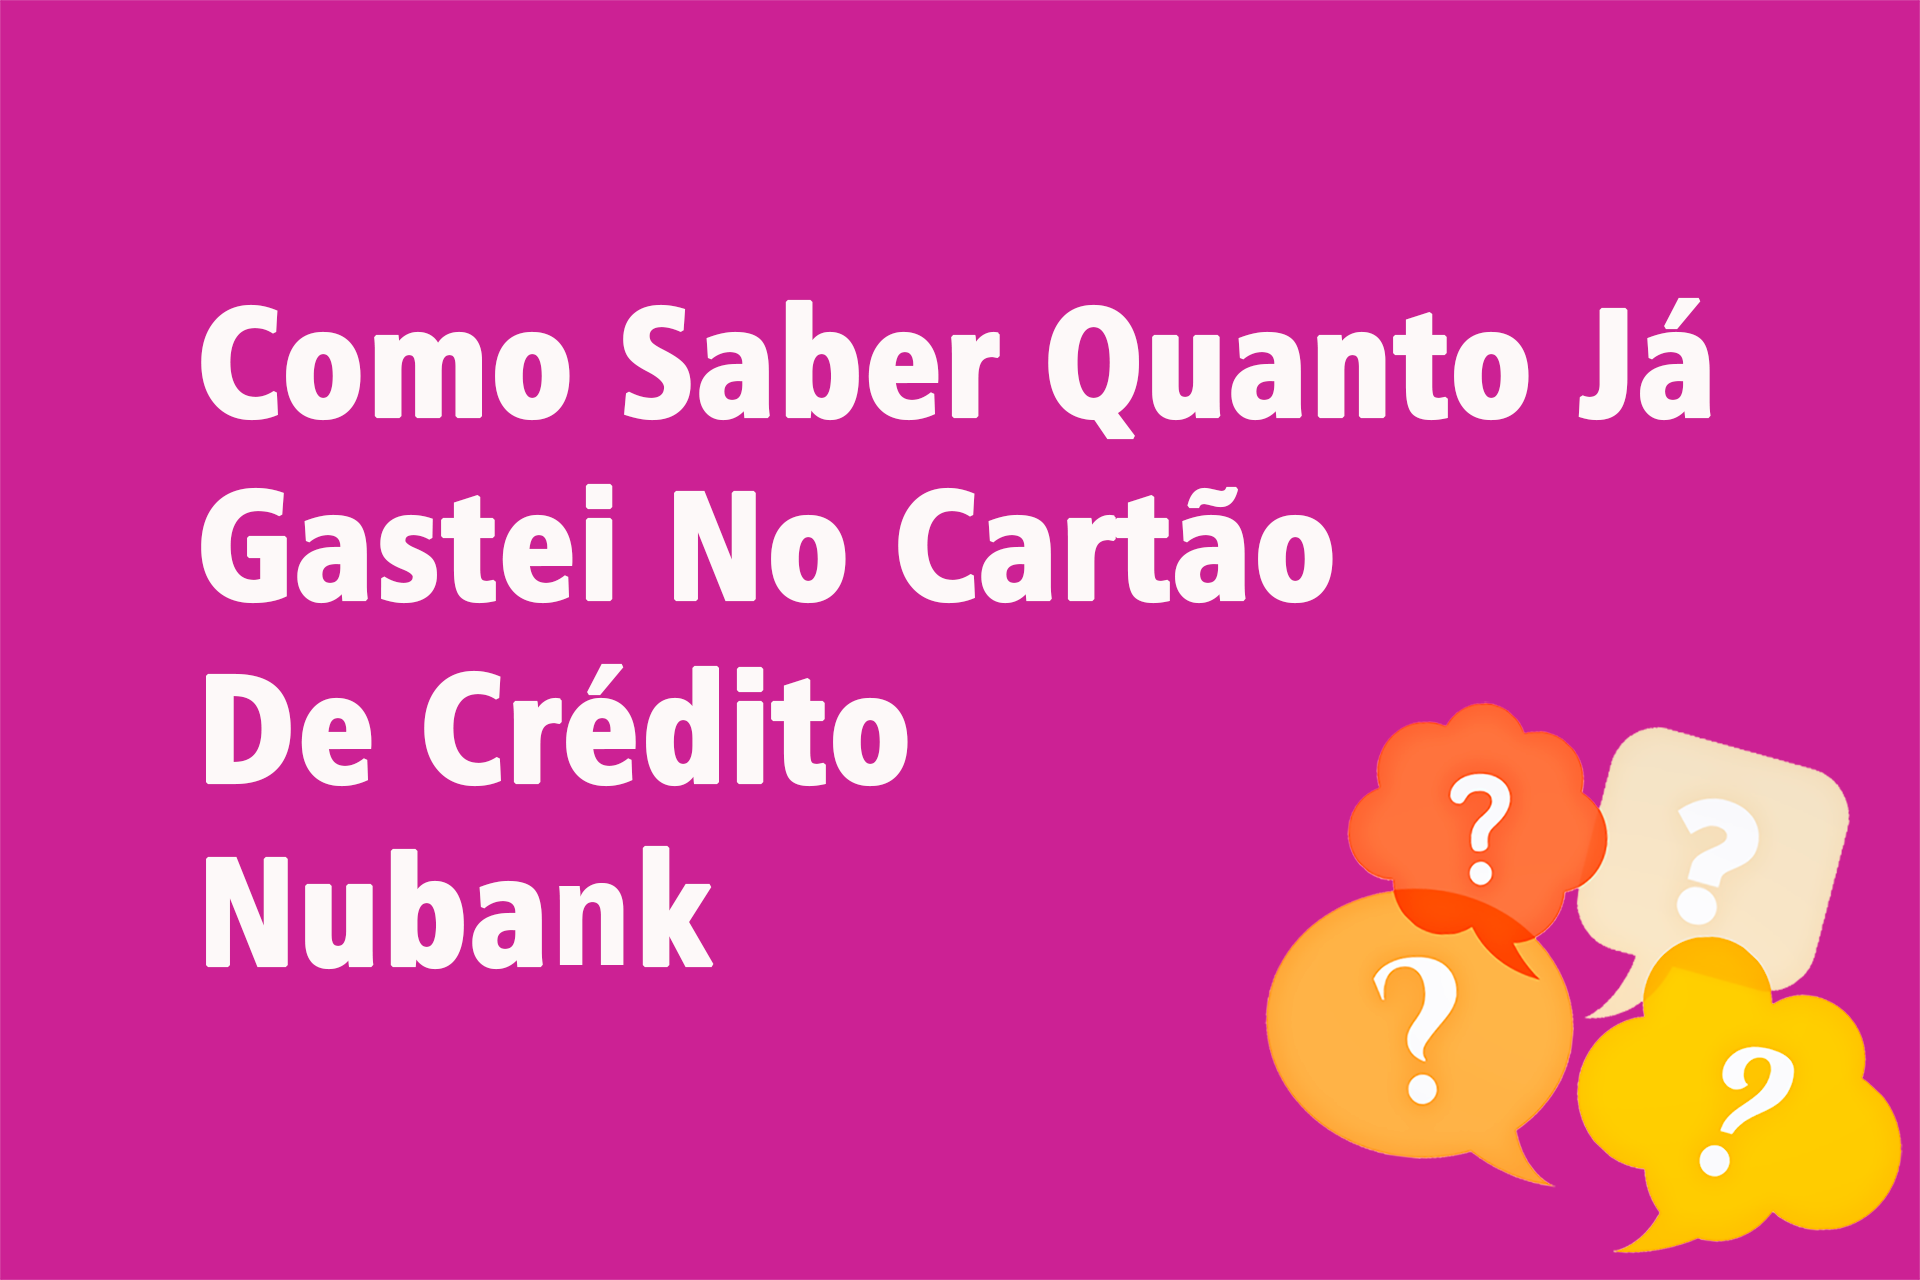 Como Saber Quanto Já Gastei No Cartão De Crédito Nubank?